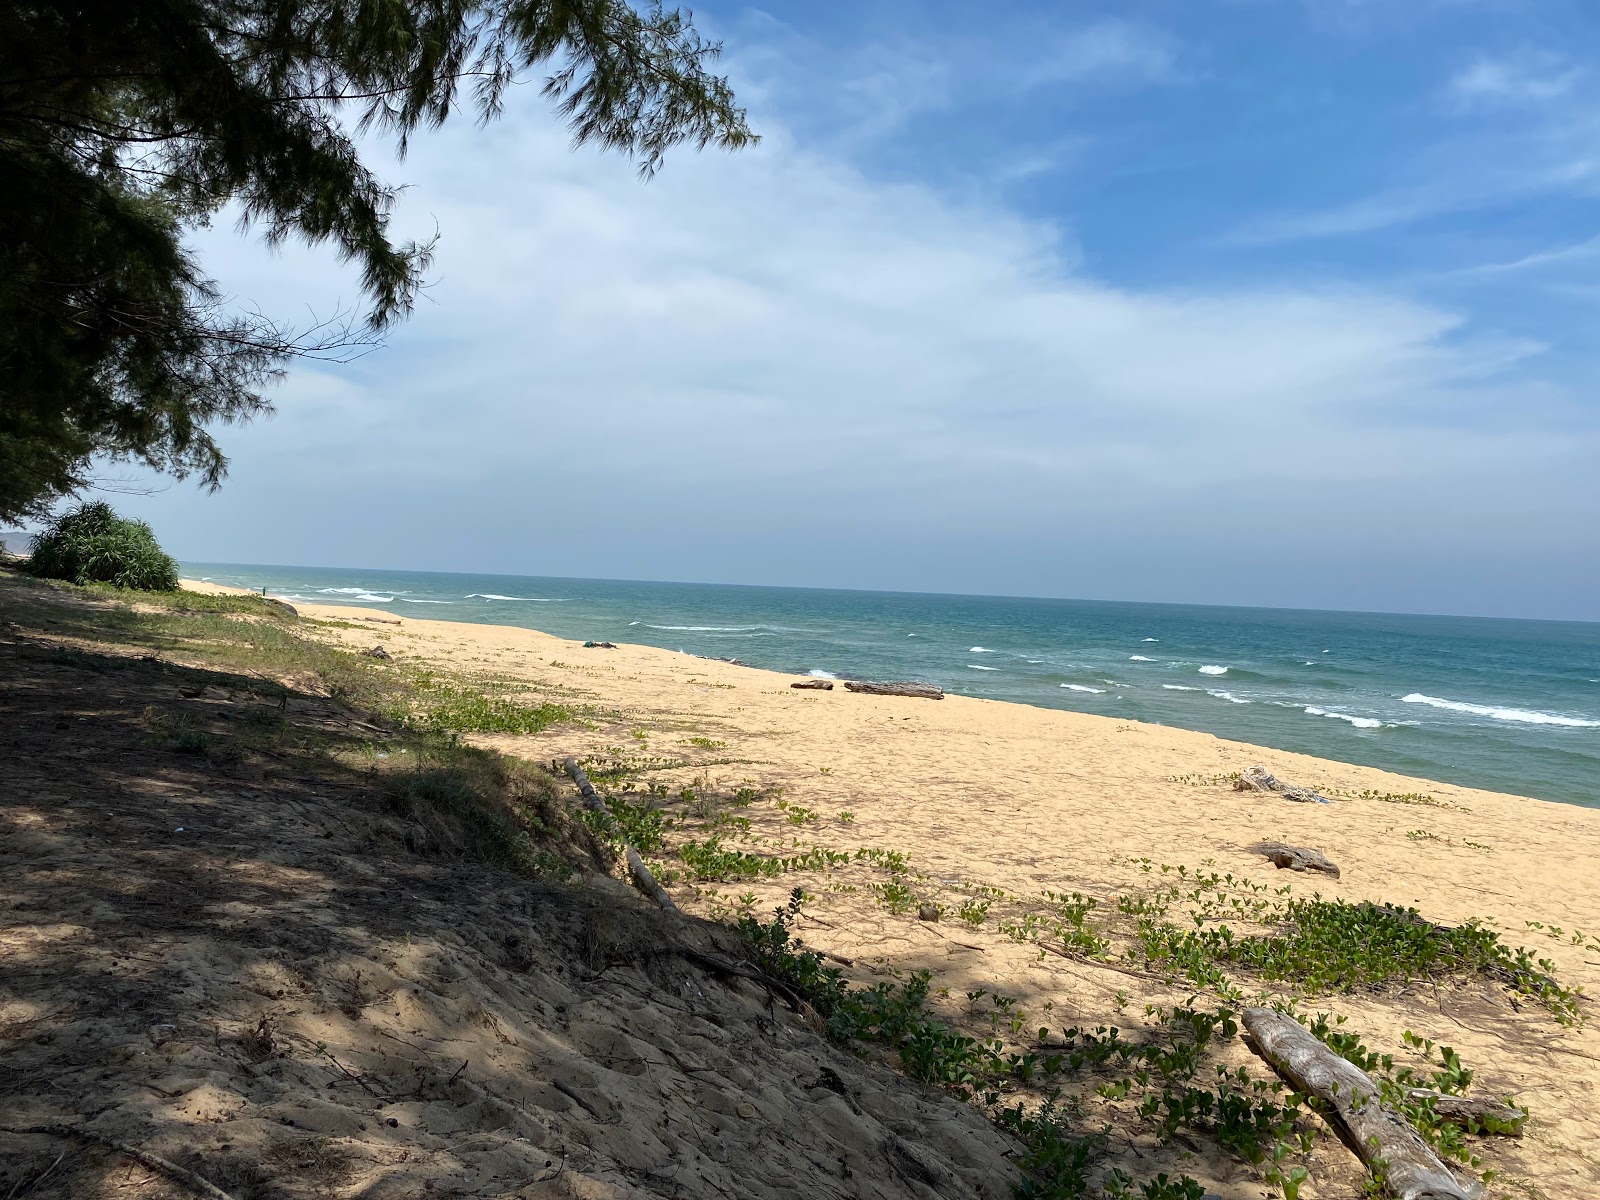 Photo de Pantai Teluk Bidara - endroit populaire parmi les connaisseurs de la détente